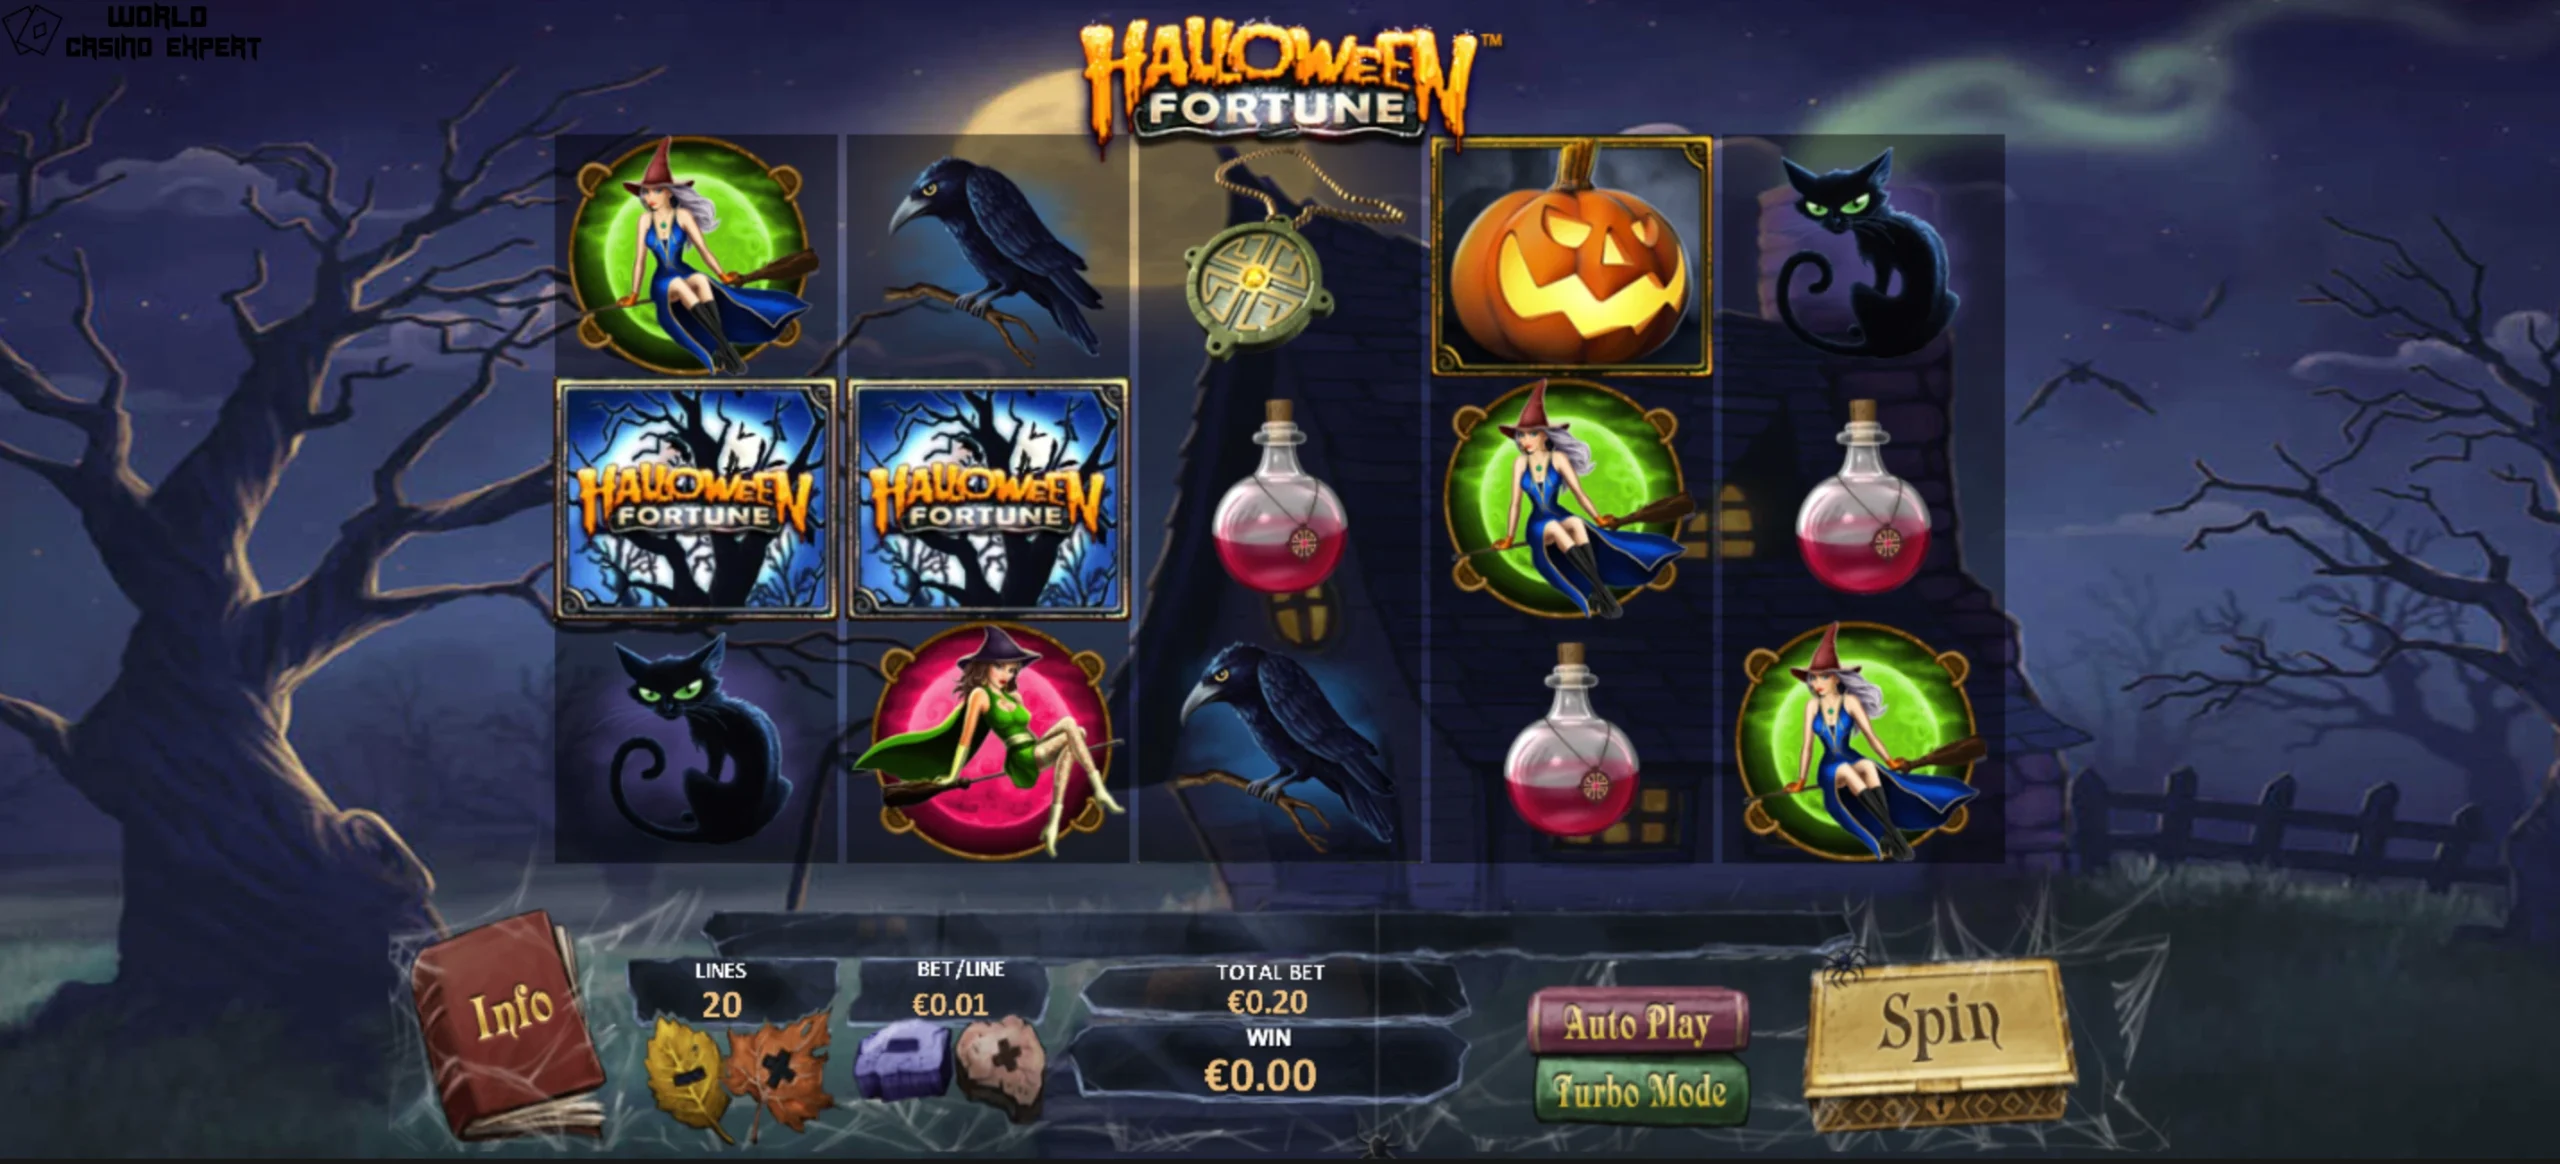 Halloween Fortune Online Slot